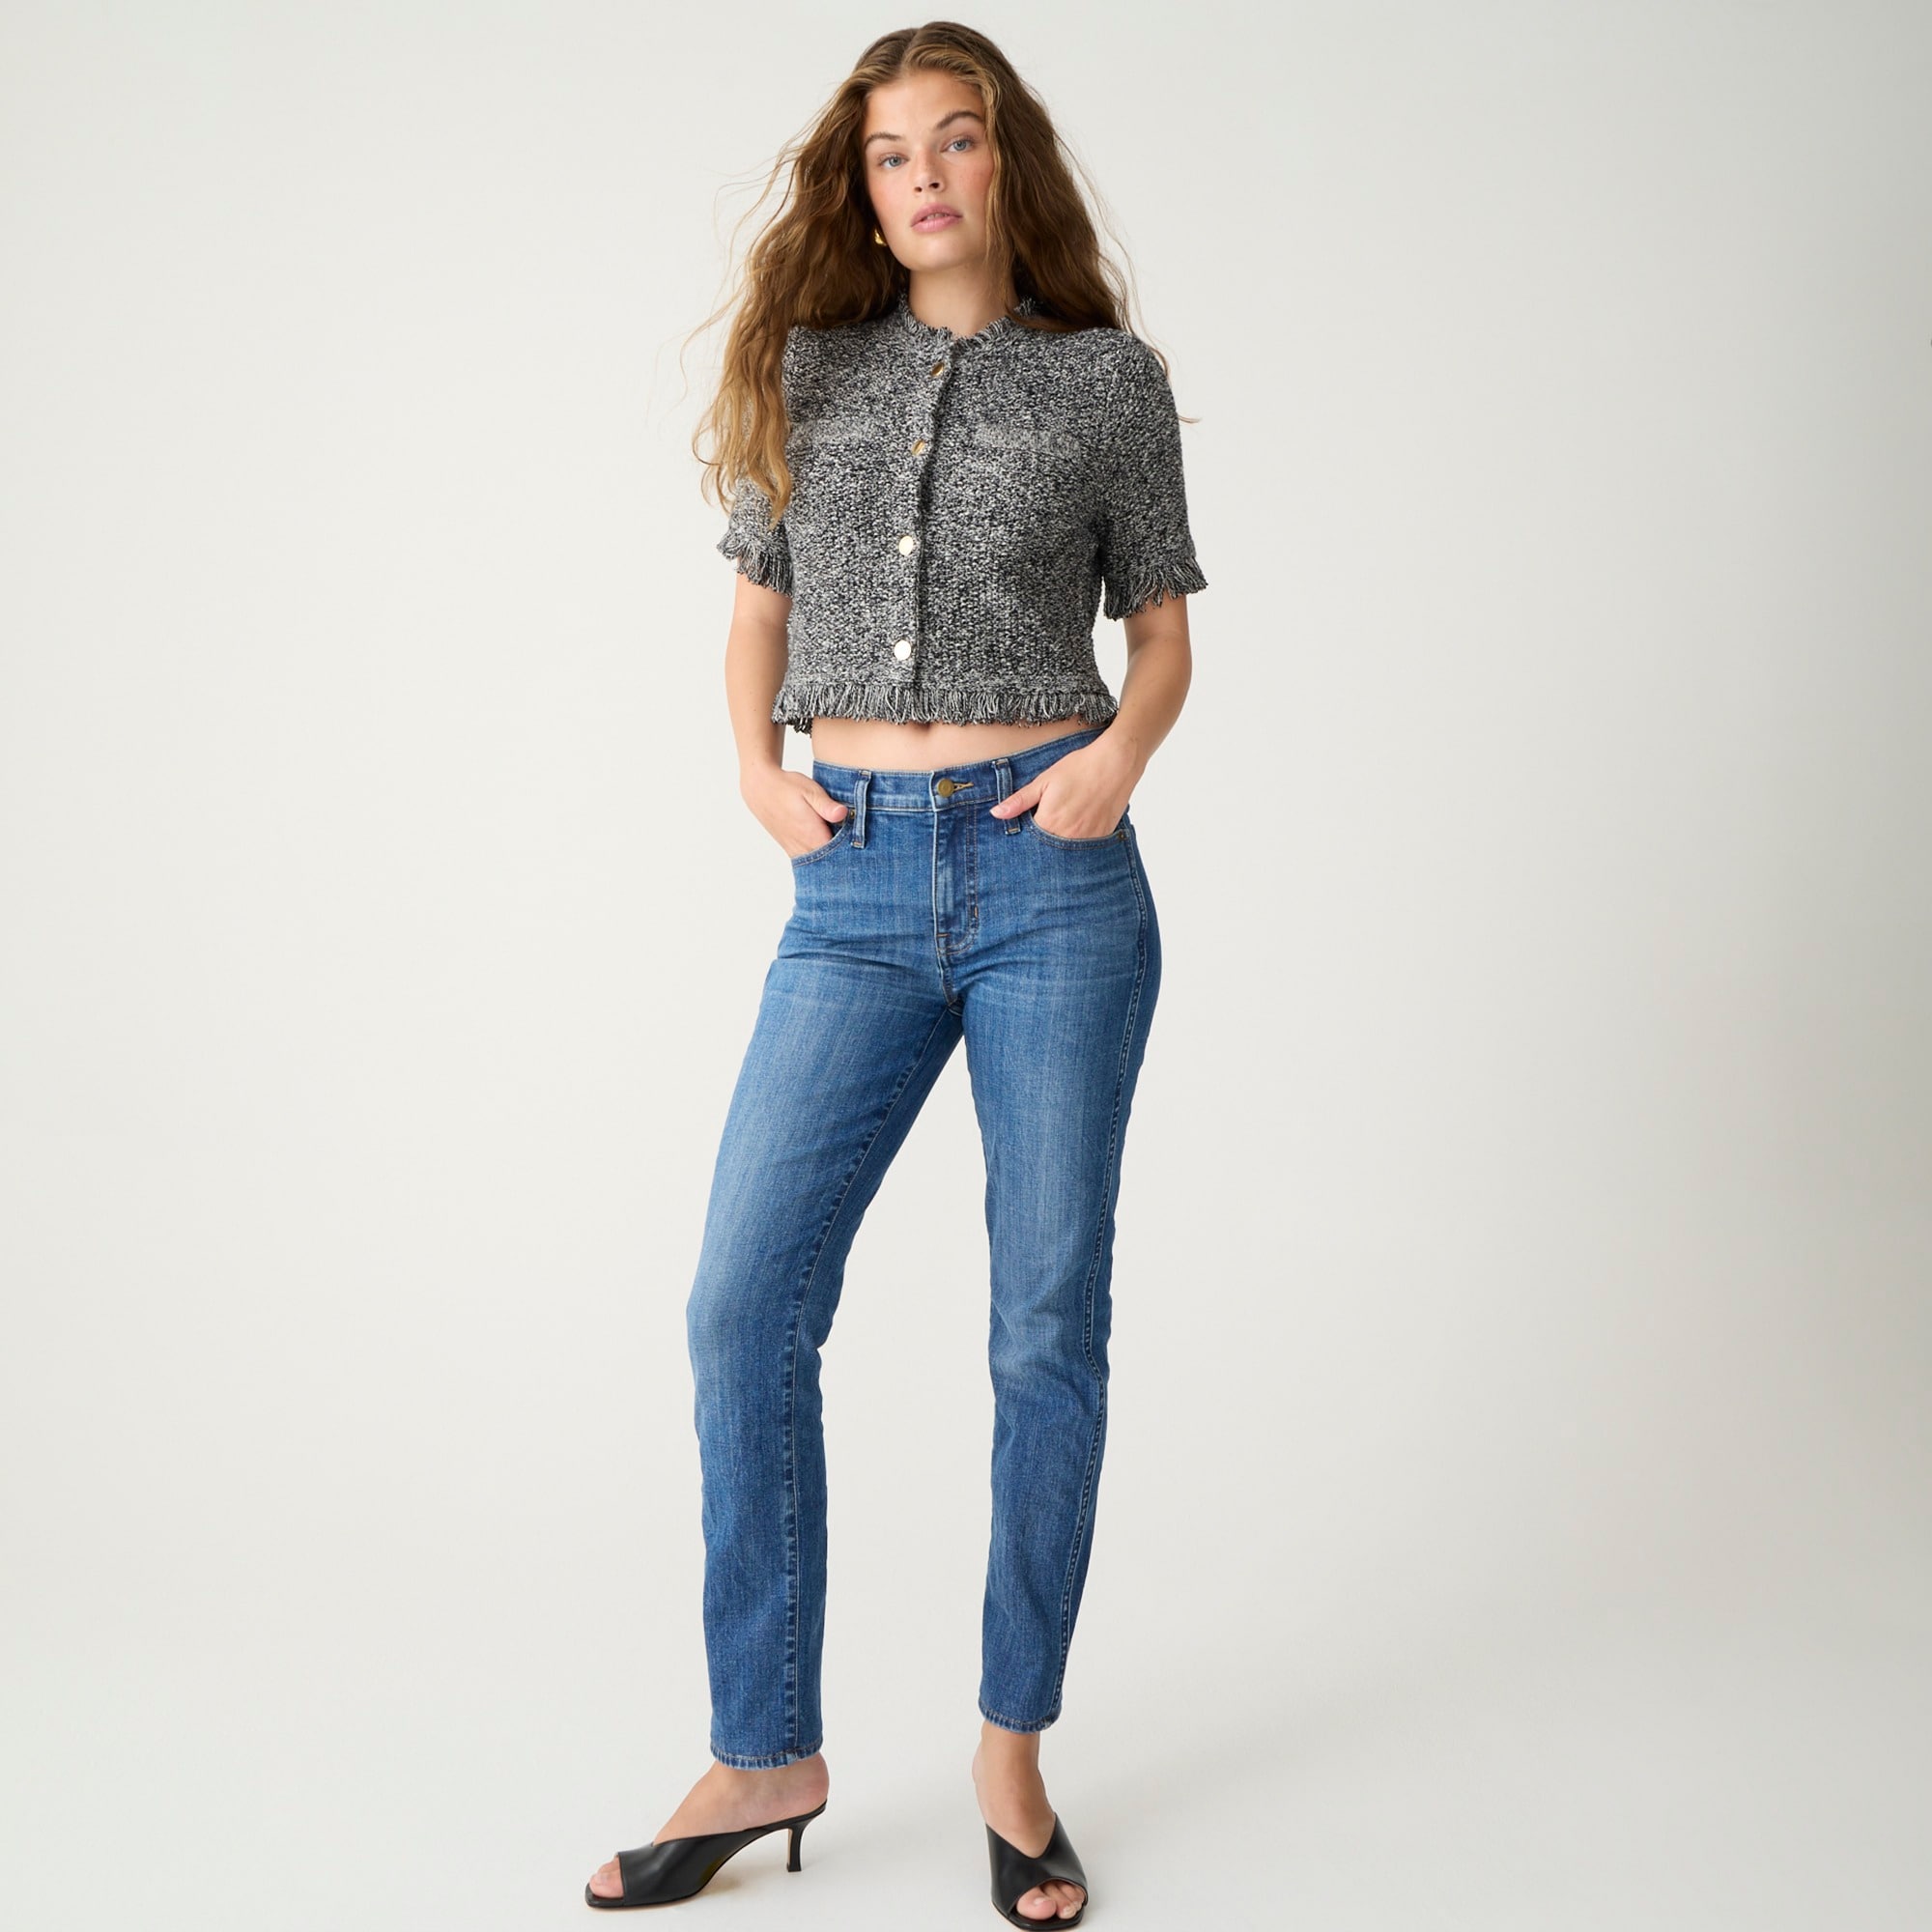  9&quot; vintage slim-straight jean in Bensen wash